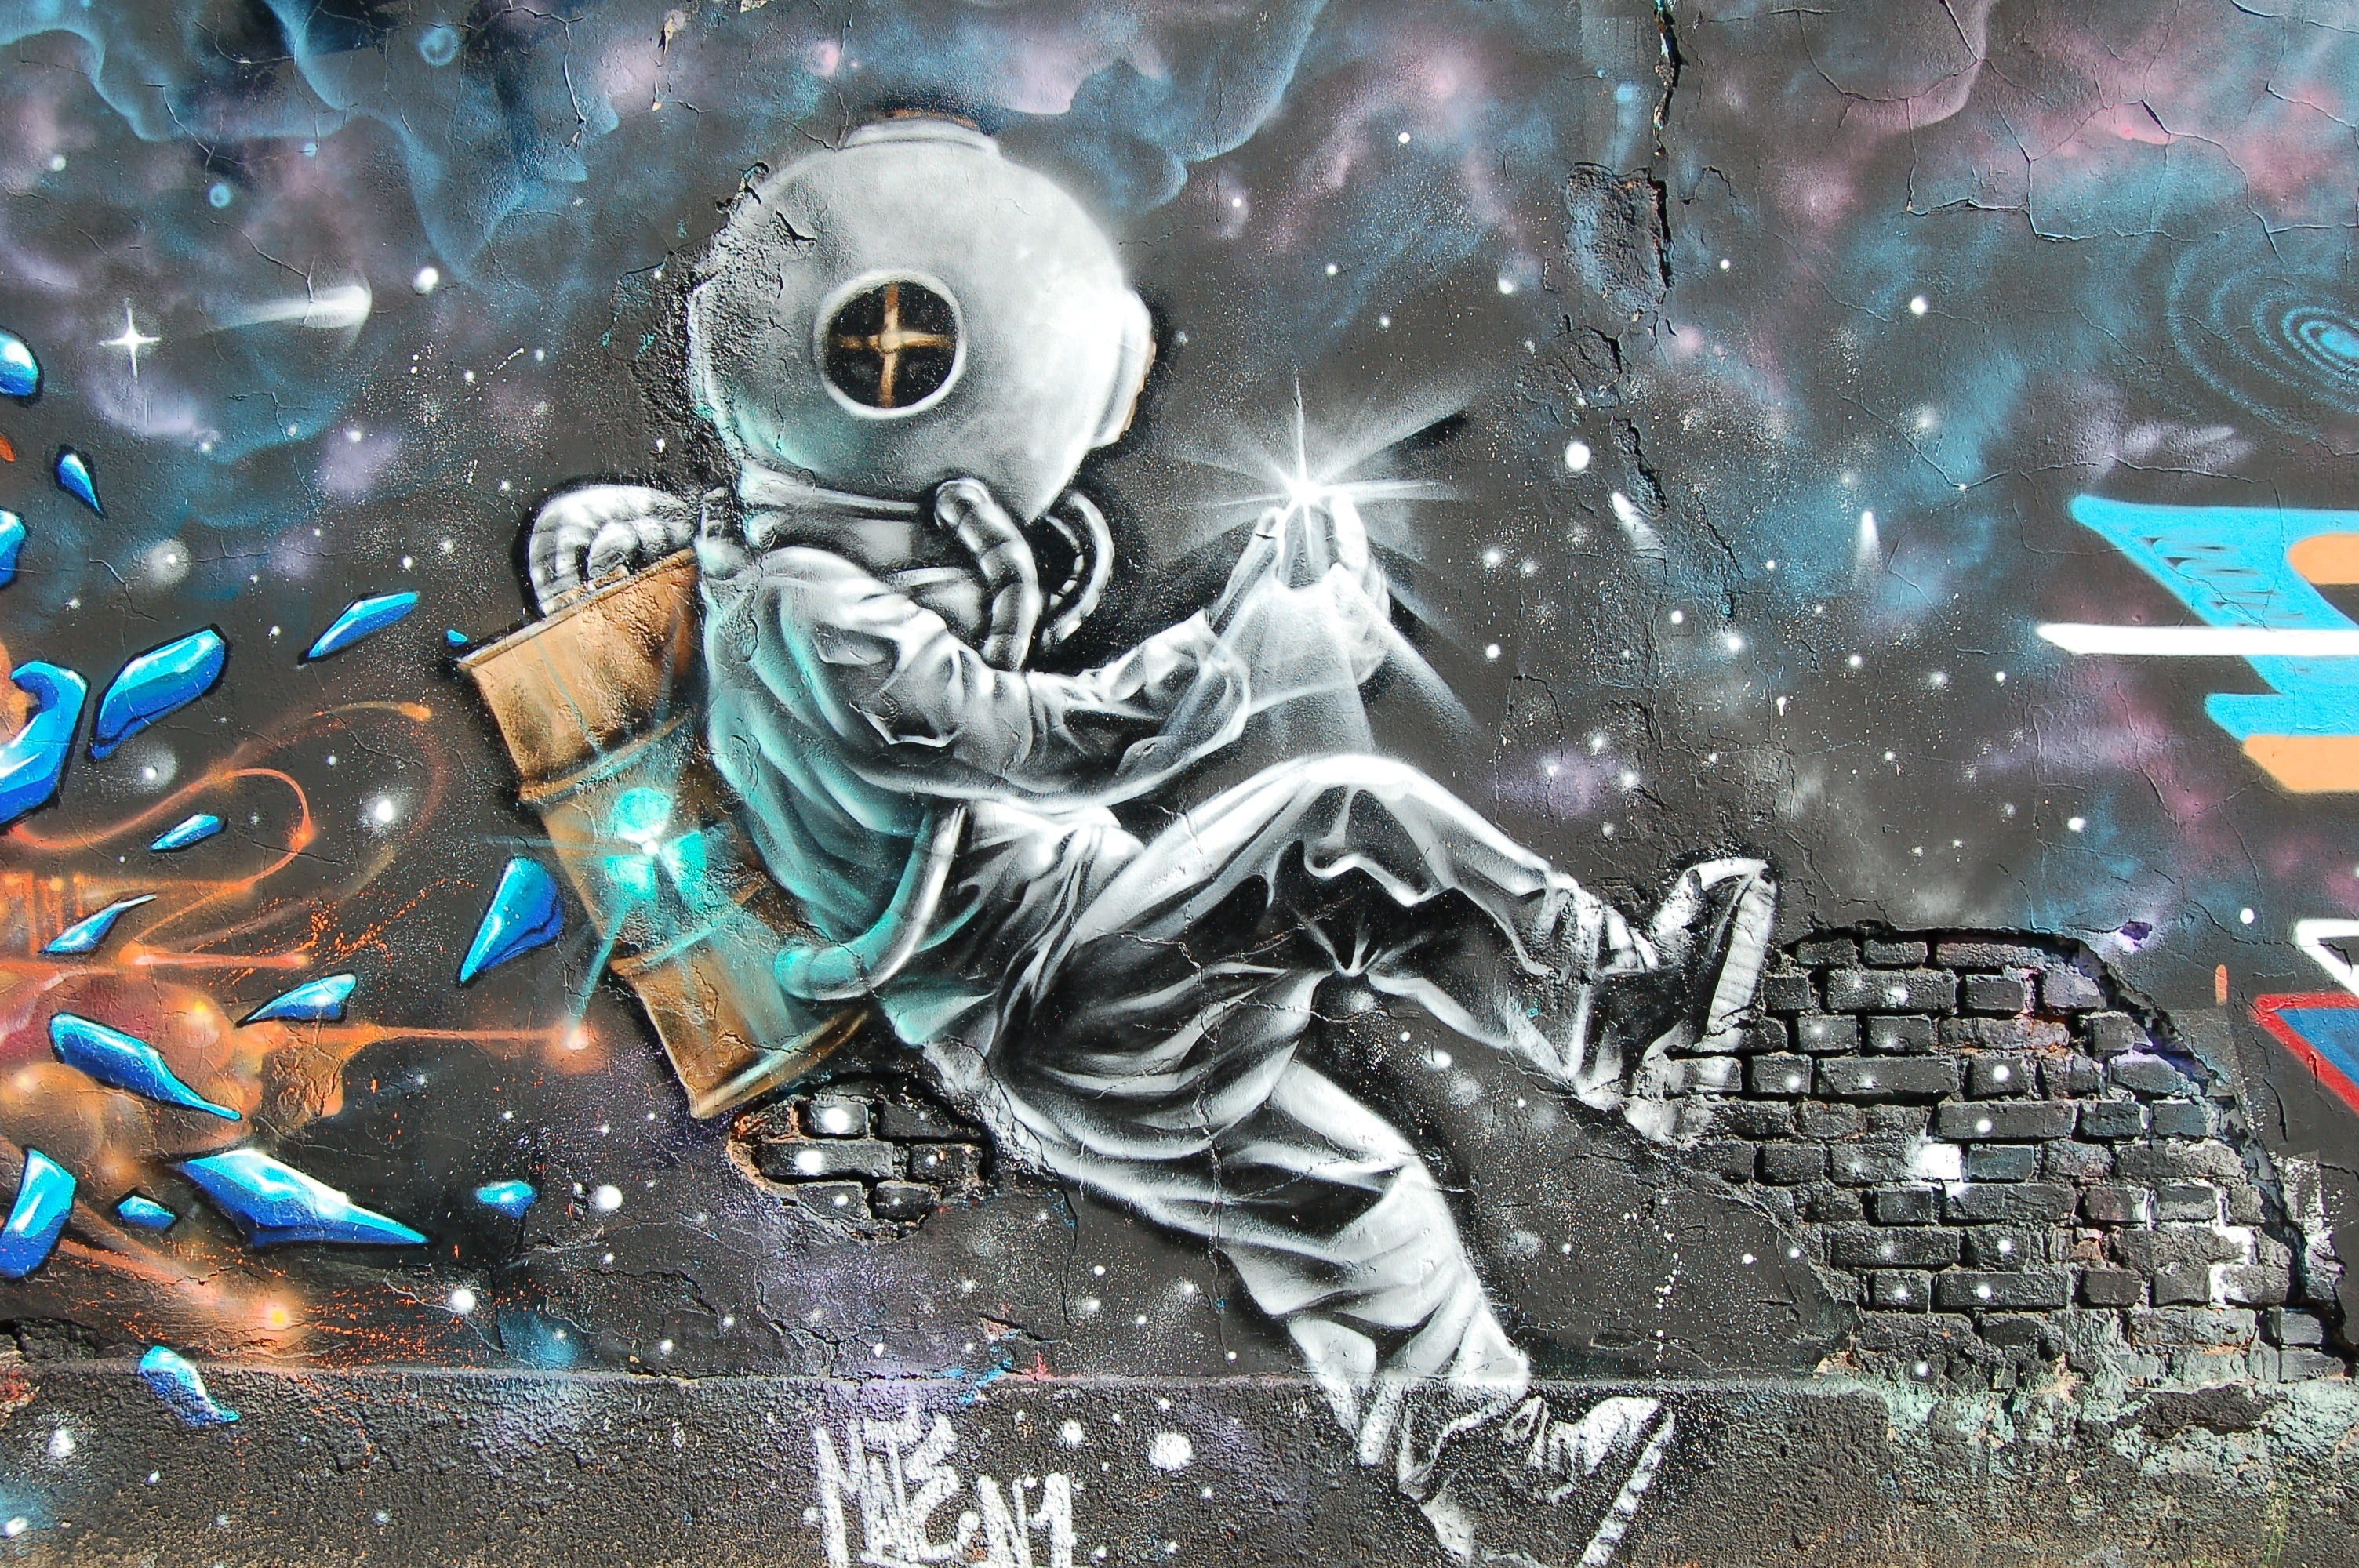 astronaut painting, wall, art, mural, graffiti, public, city